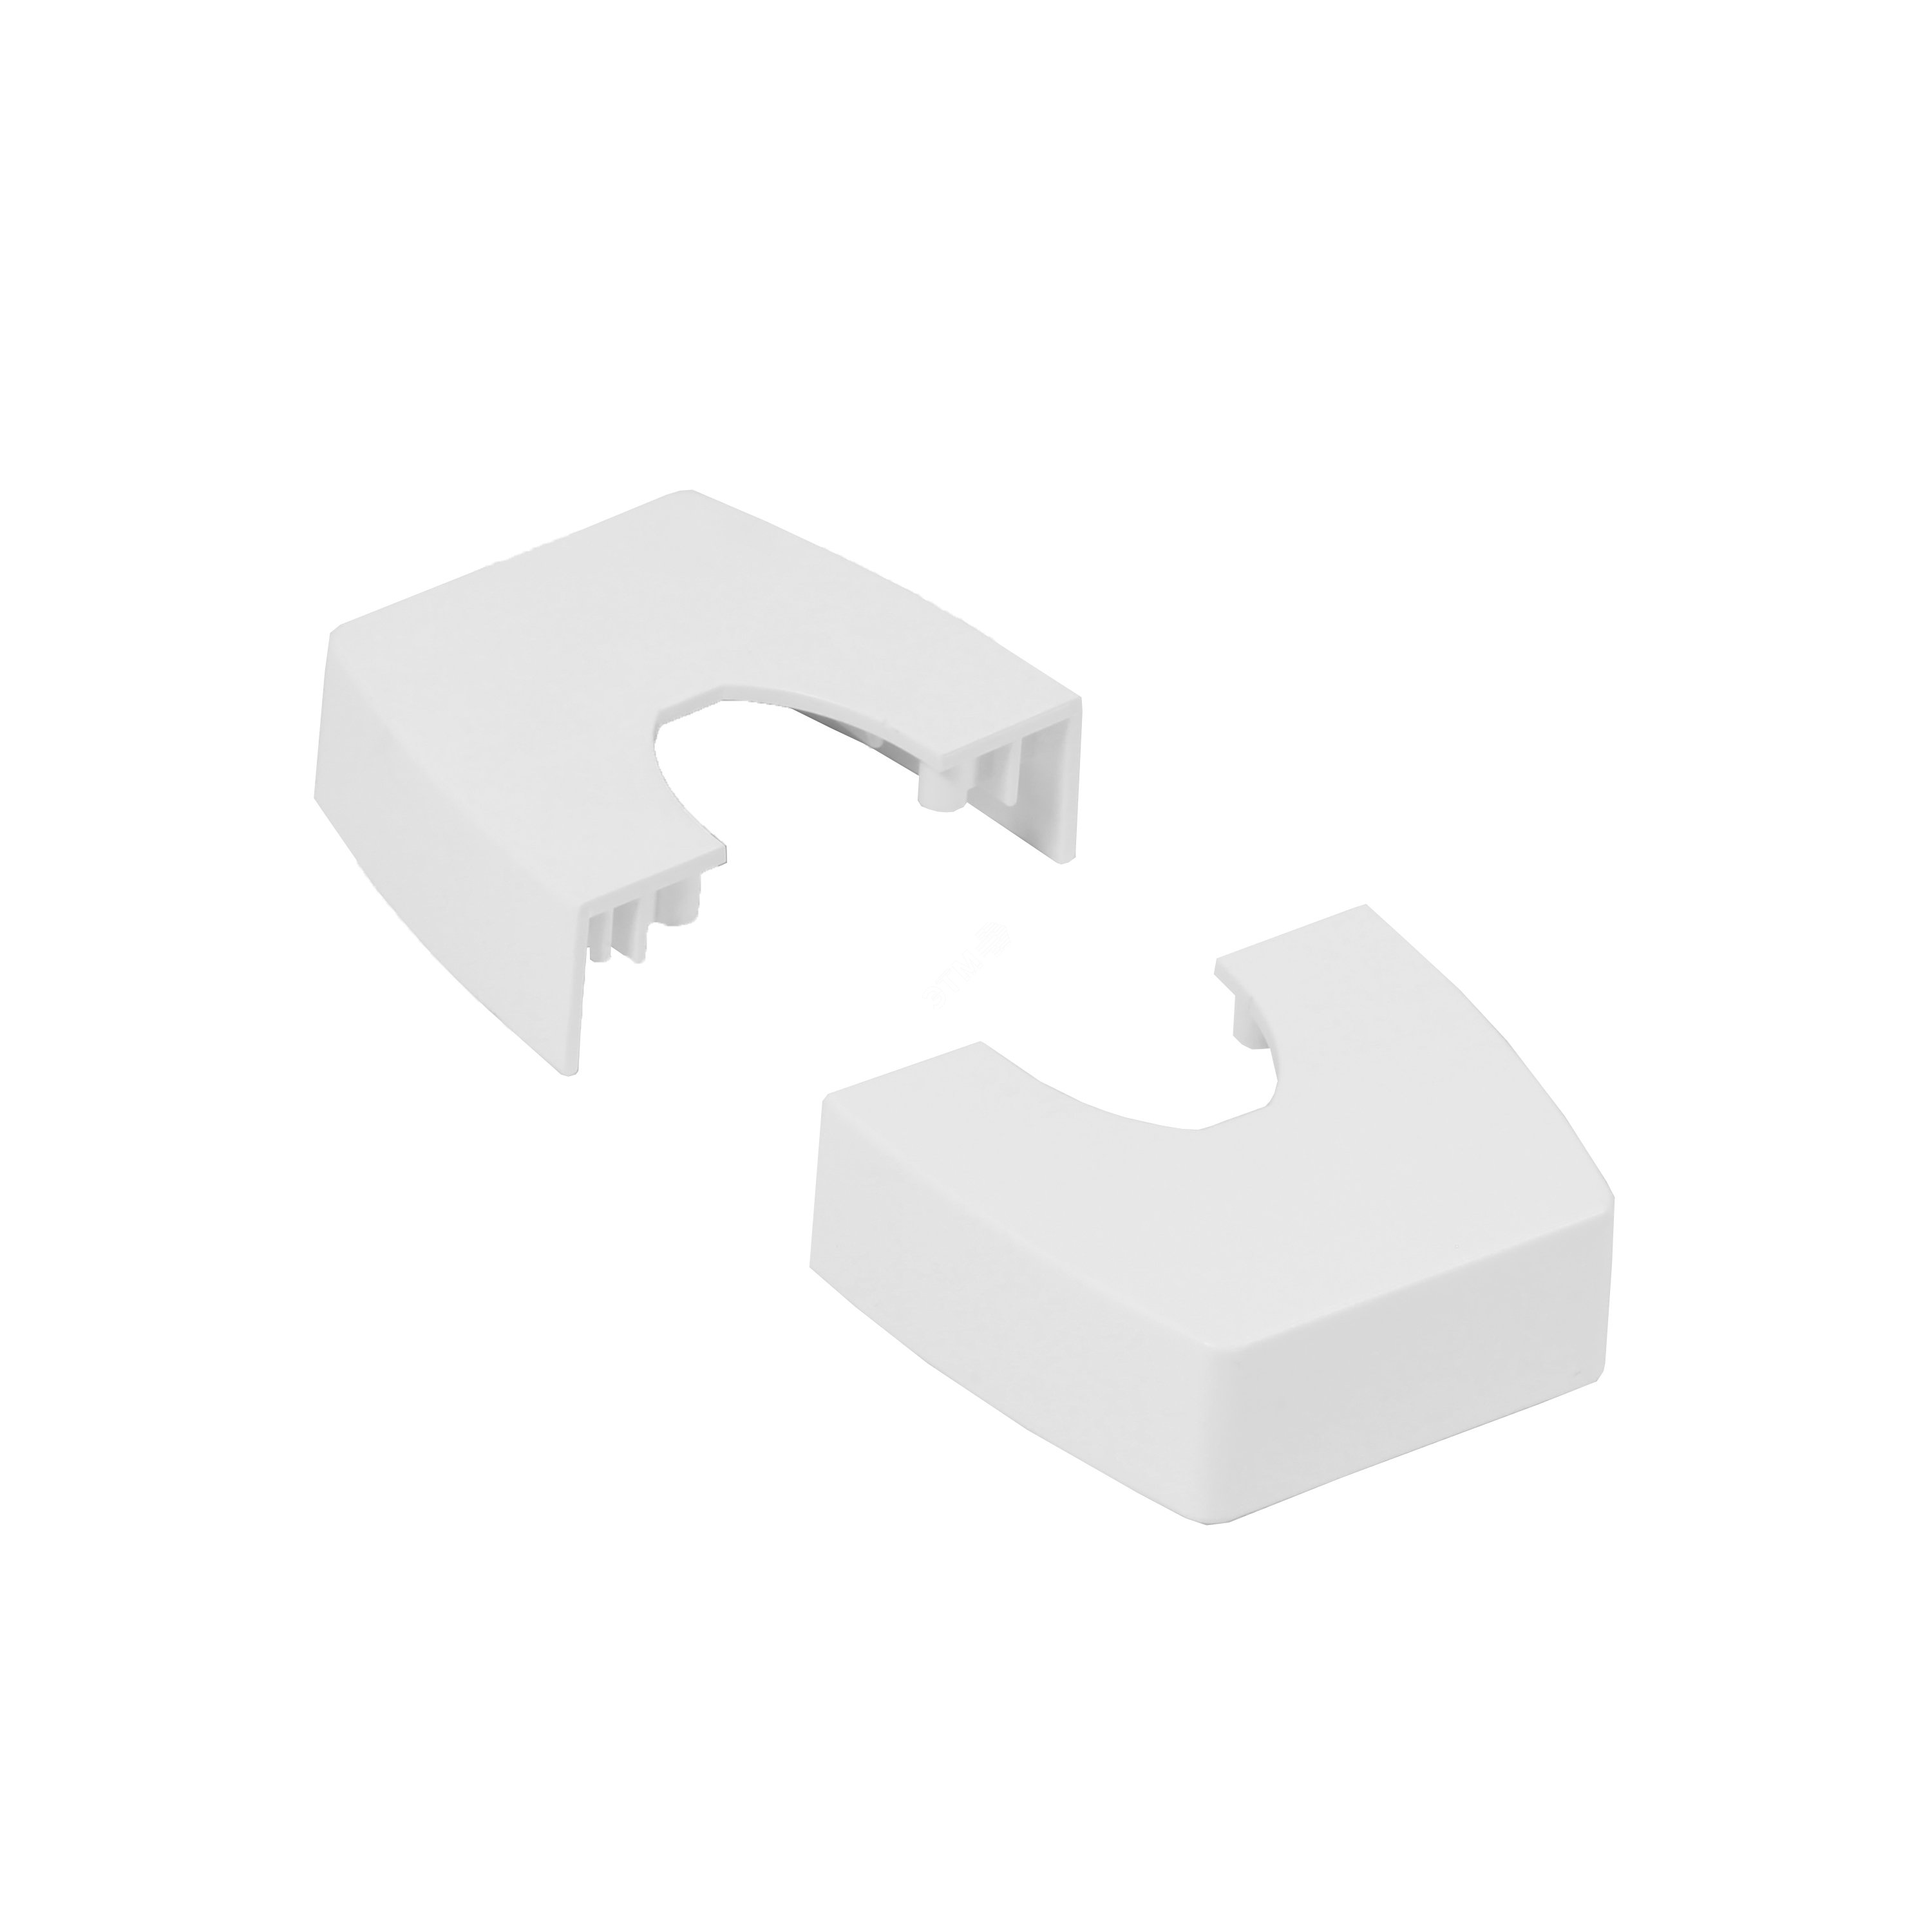 Крышка для комплекта подвода питания Ovaline через потолок пластиковая, цвет белый 980976 Legrand - превью 2